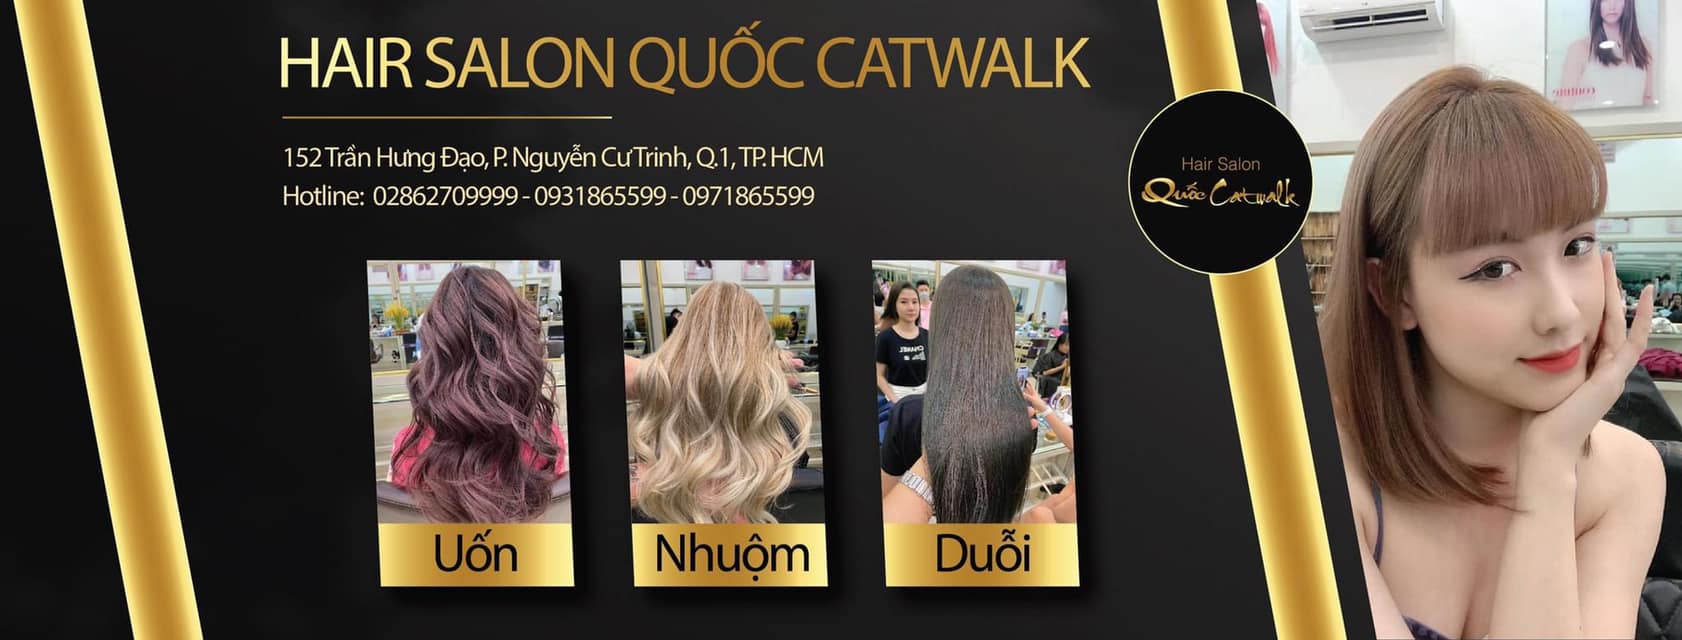 Quoc Catwalk Hair Salon ảnh 1